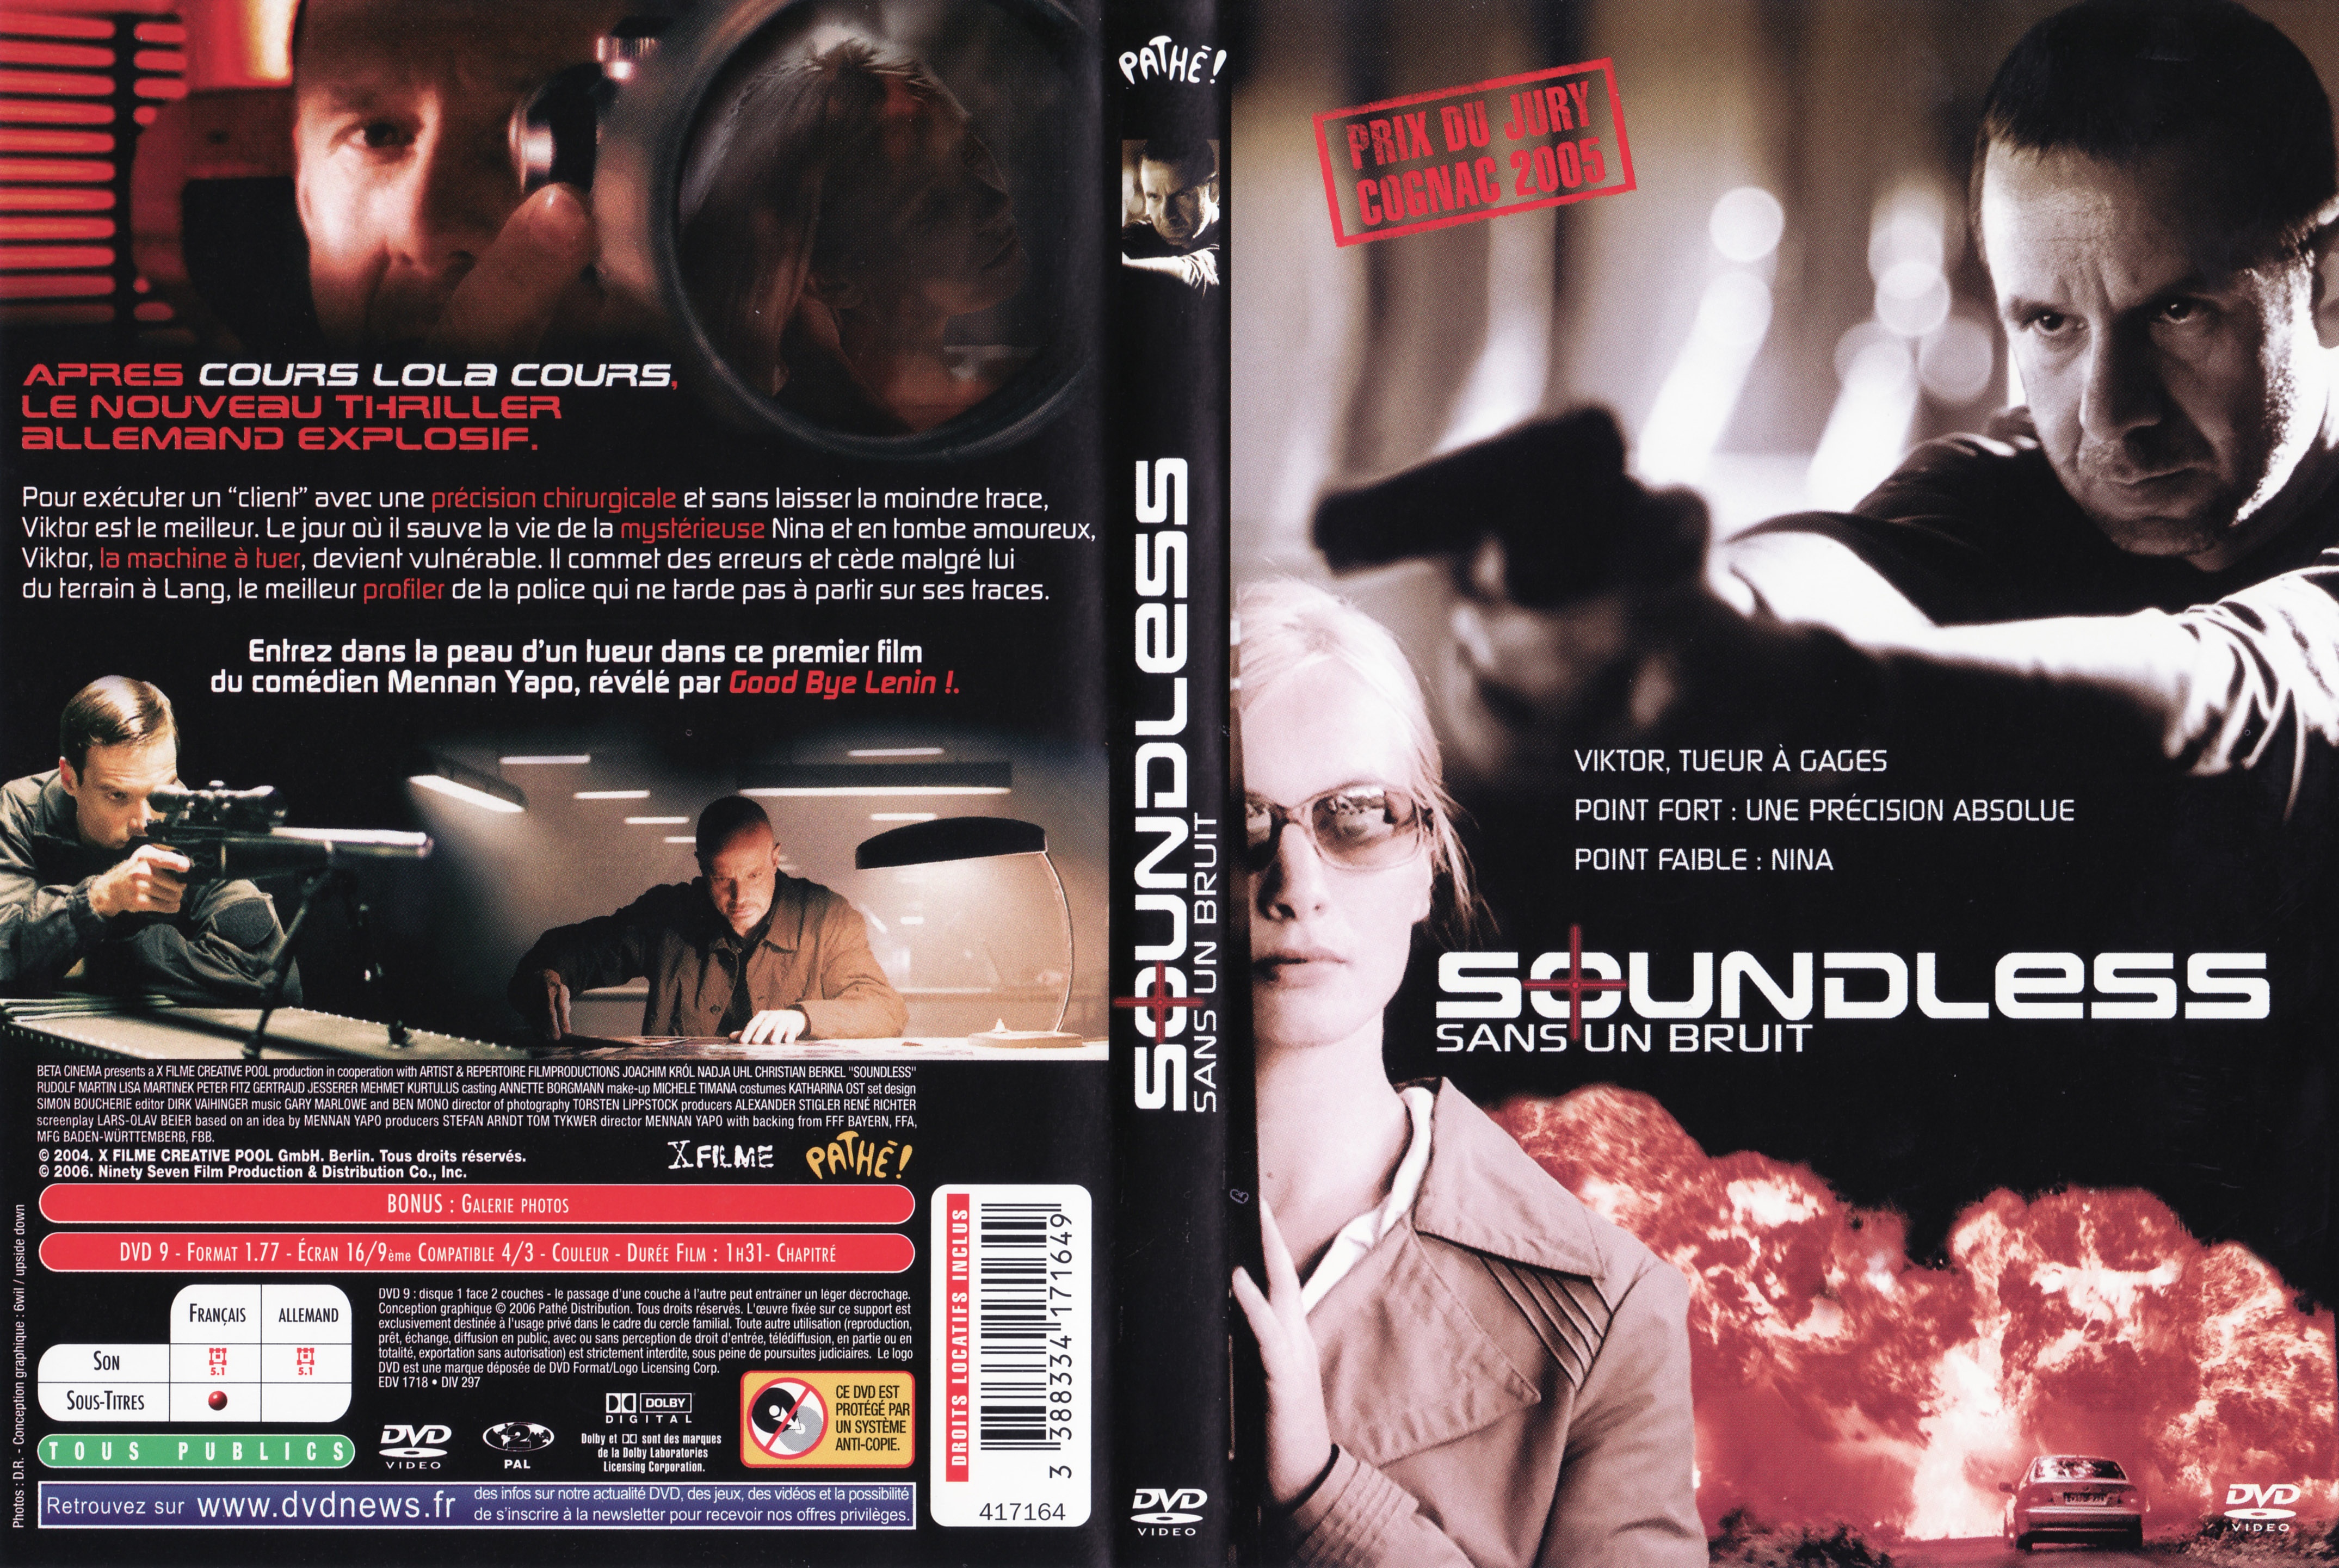 Jaquette DVD Soundless Sans bruit